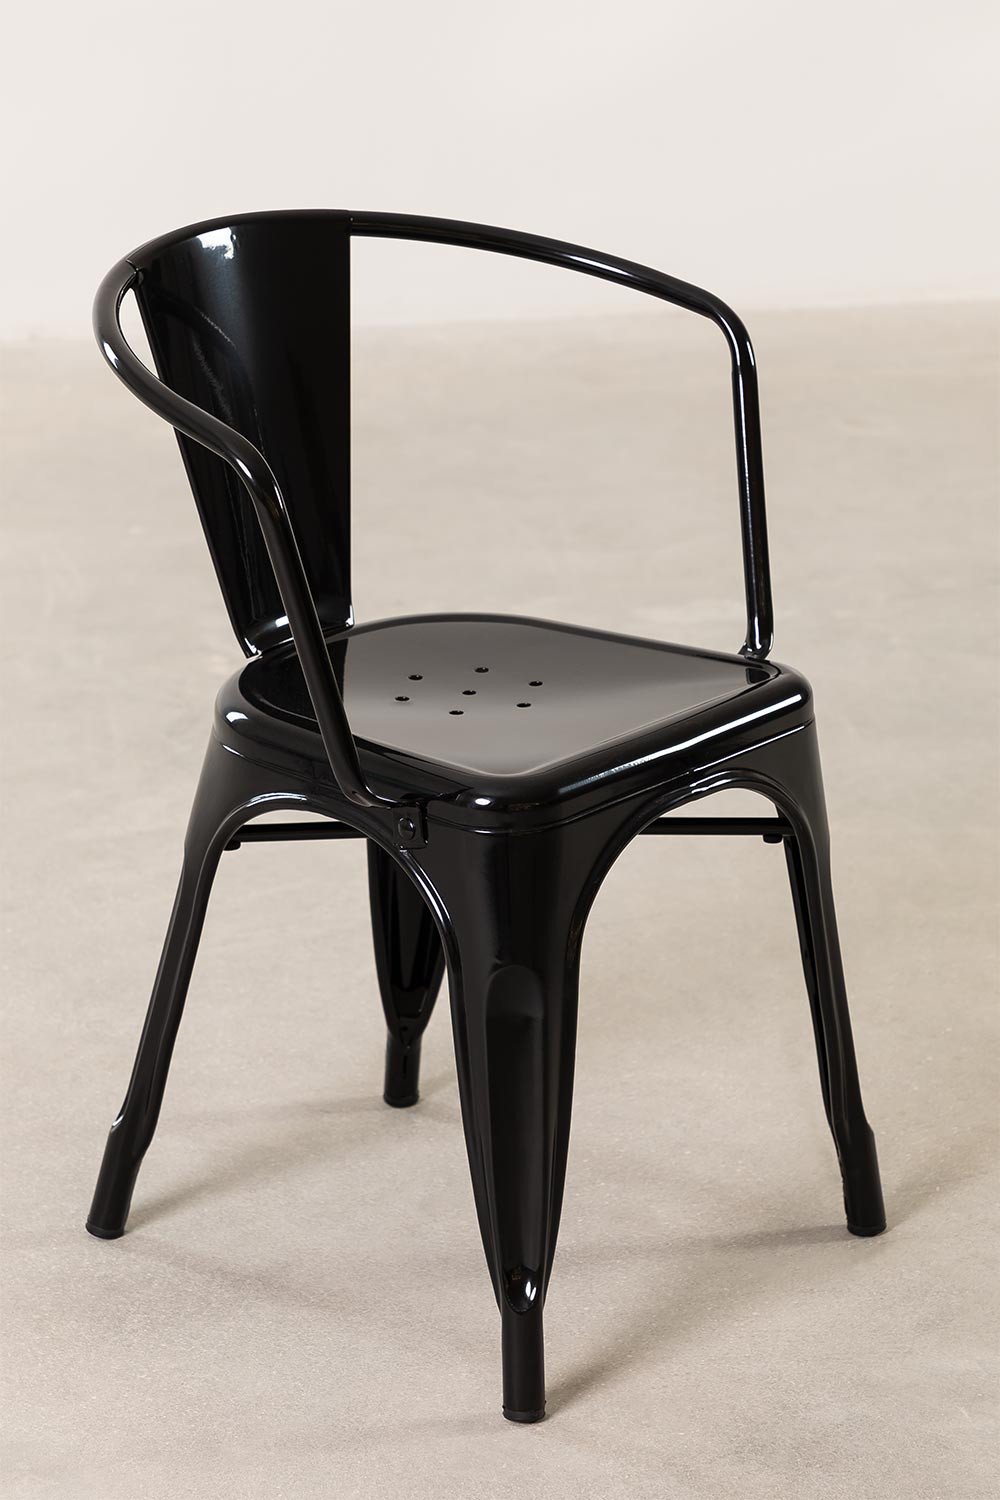 Krzeslo sztaplowane LIX z podlokietnikami  , obrazek w galerii 2